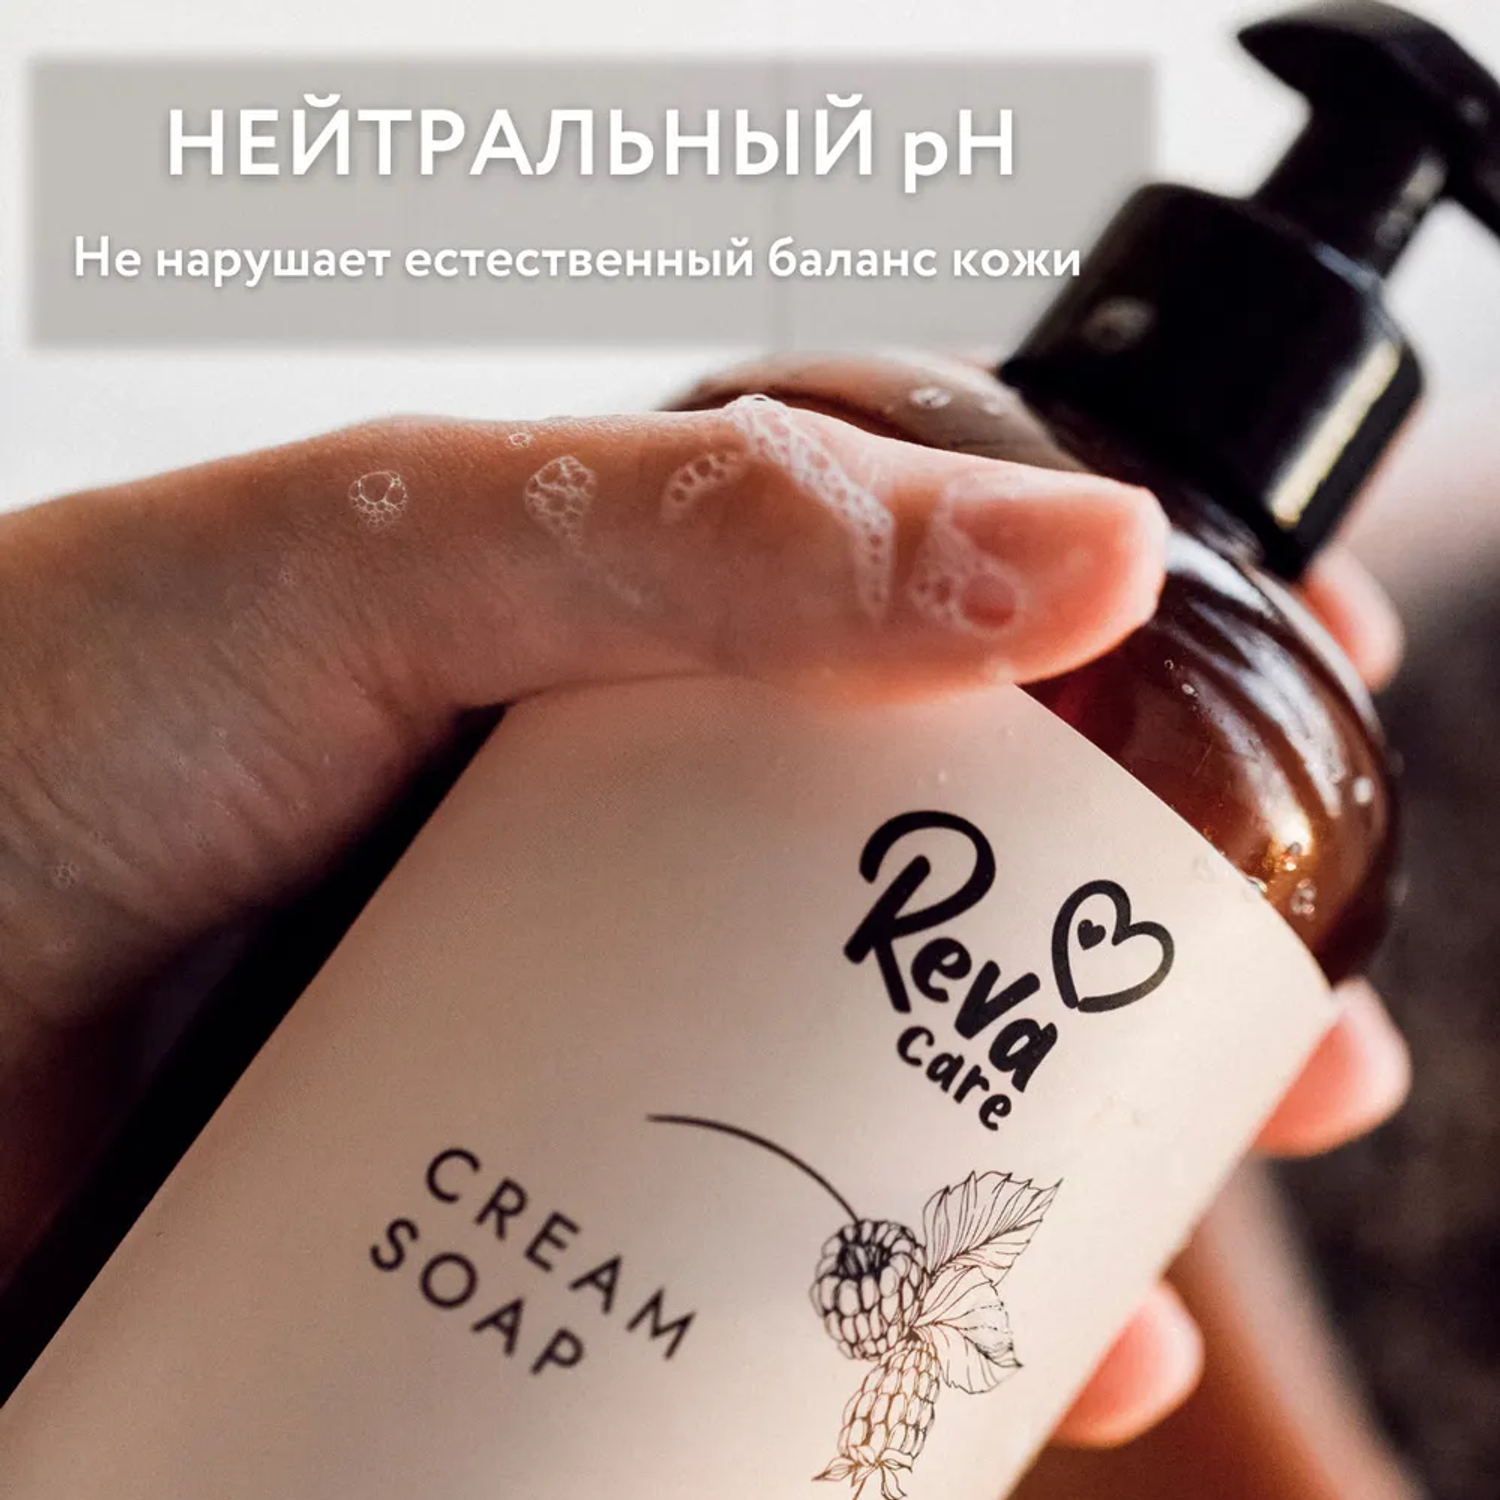 Жидкое мыло Reva Care для рук Cream Soap гипоаллергенное густое мягкое с ароматом ежевики 500 мл - фото 6